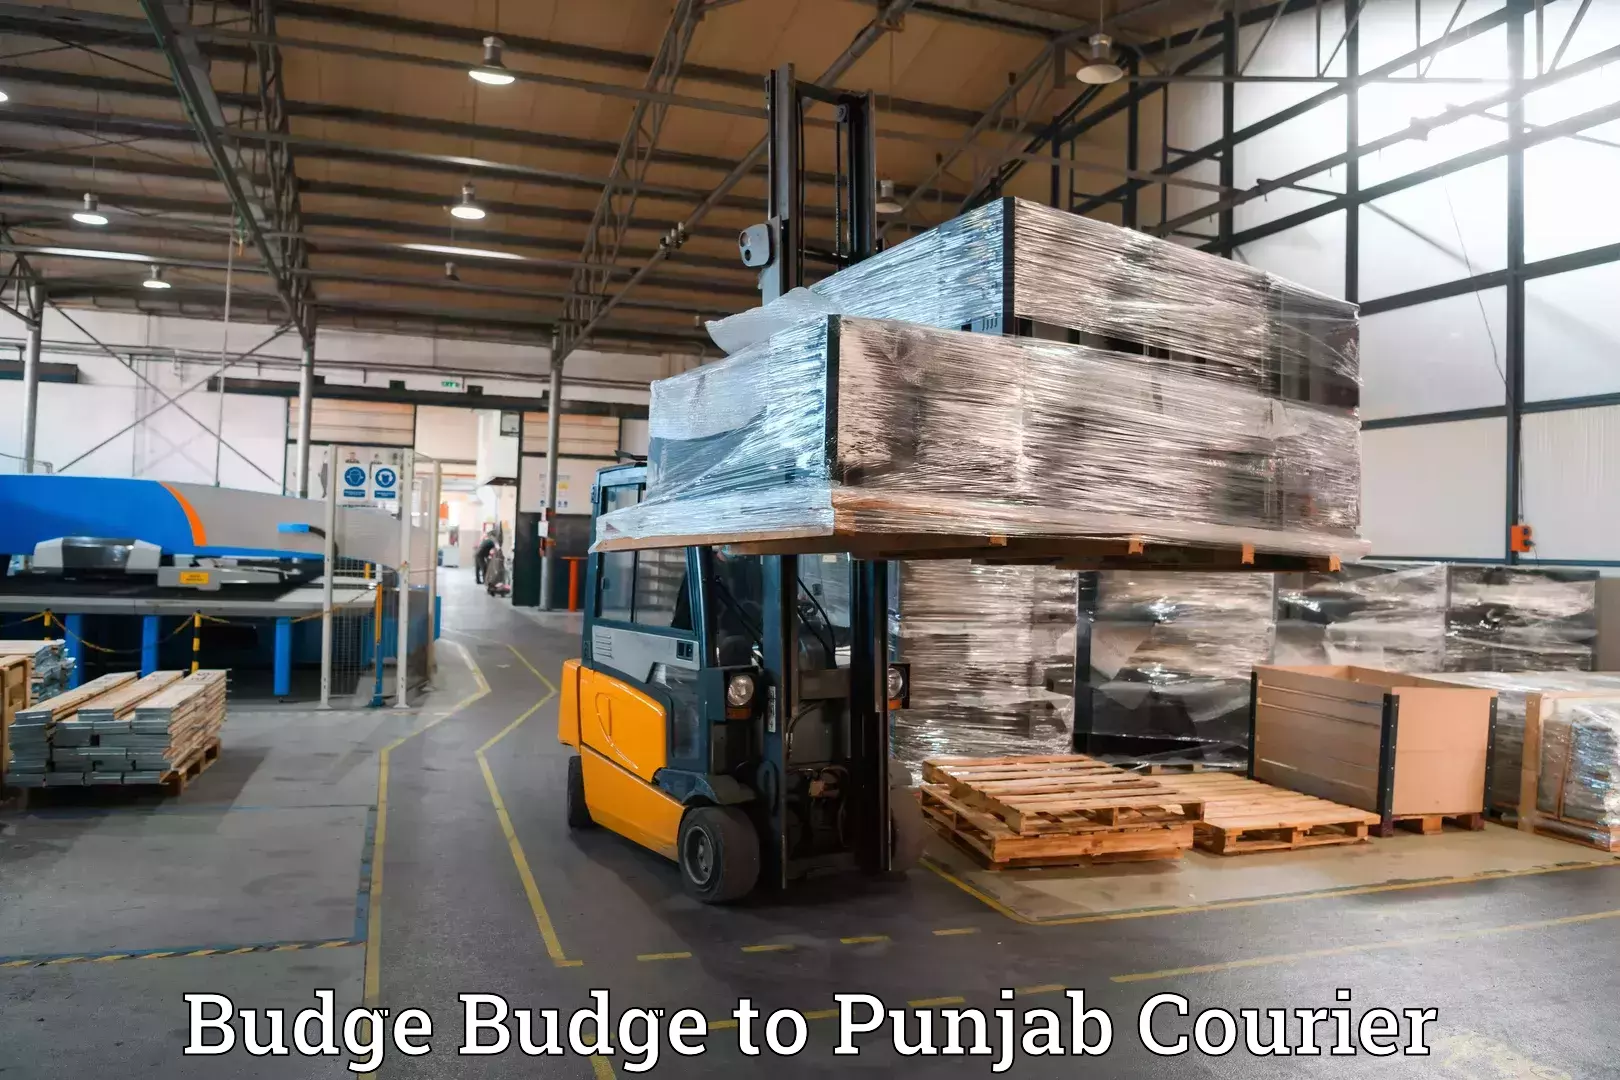 Efficient baggage transport Budge Budge to Punjab